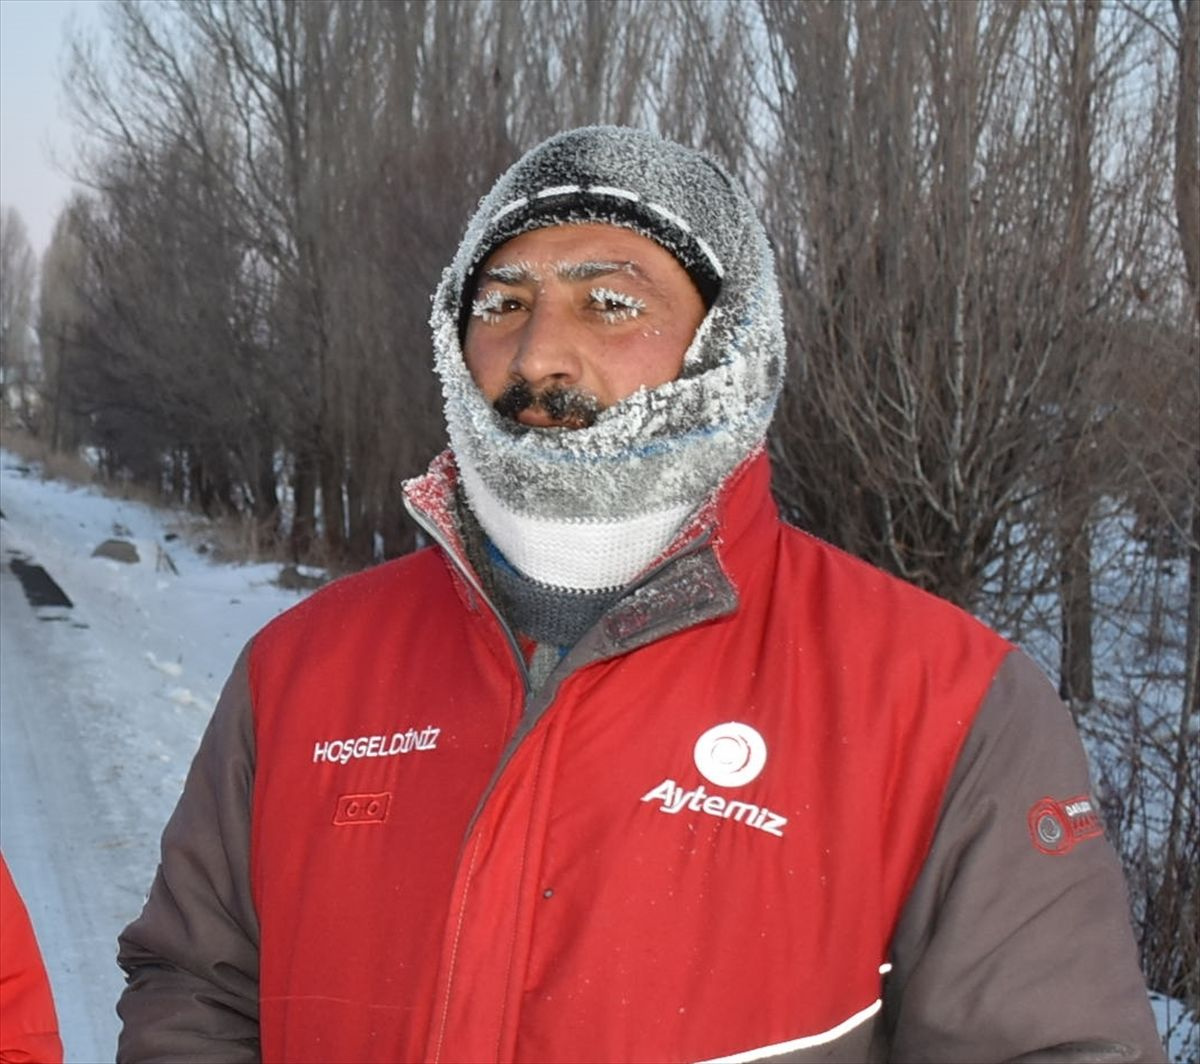 Kars'ta kaşı kirpikleri bıyığı buz tutan vatandaş soğuk hava çilesine mani koştu